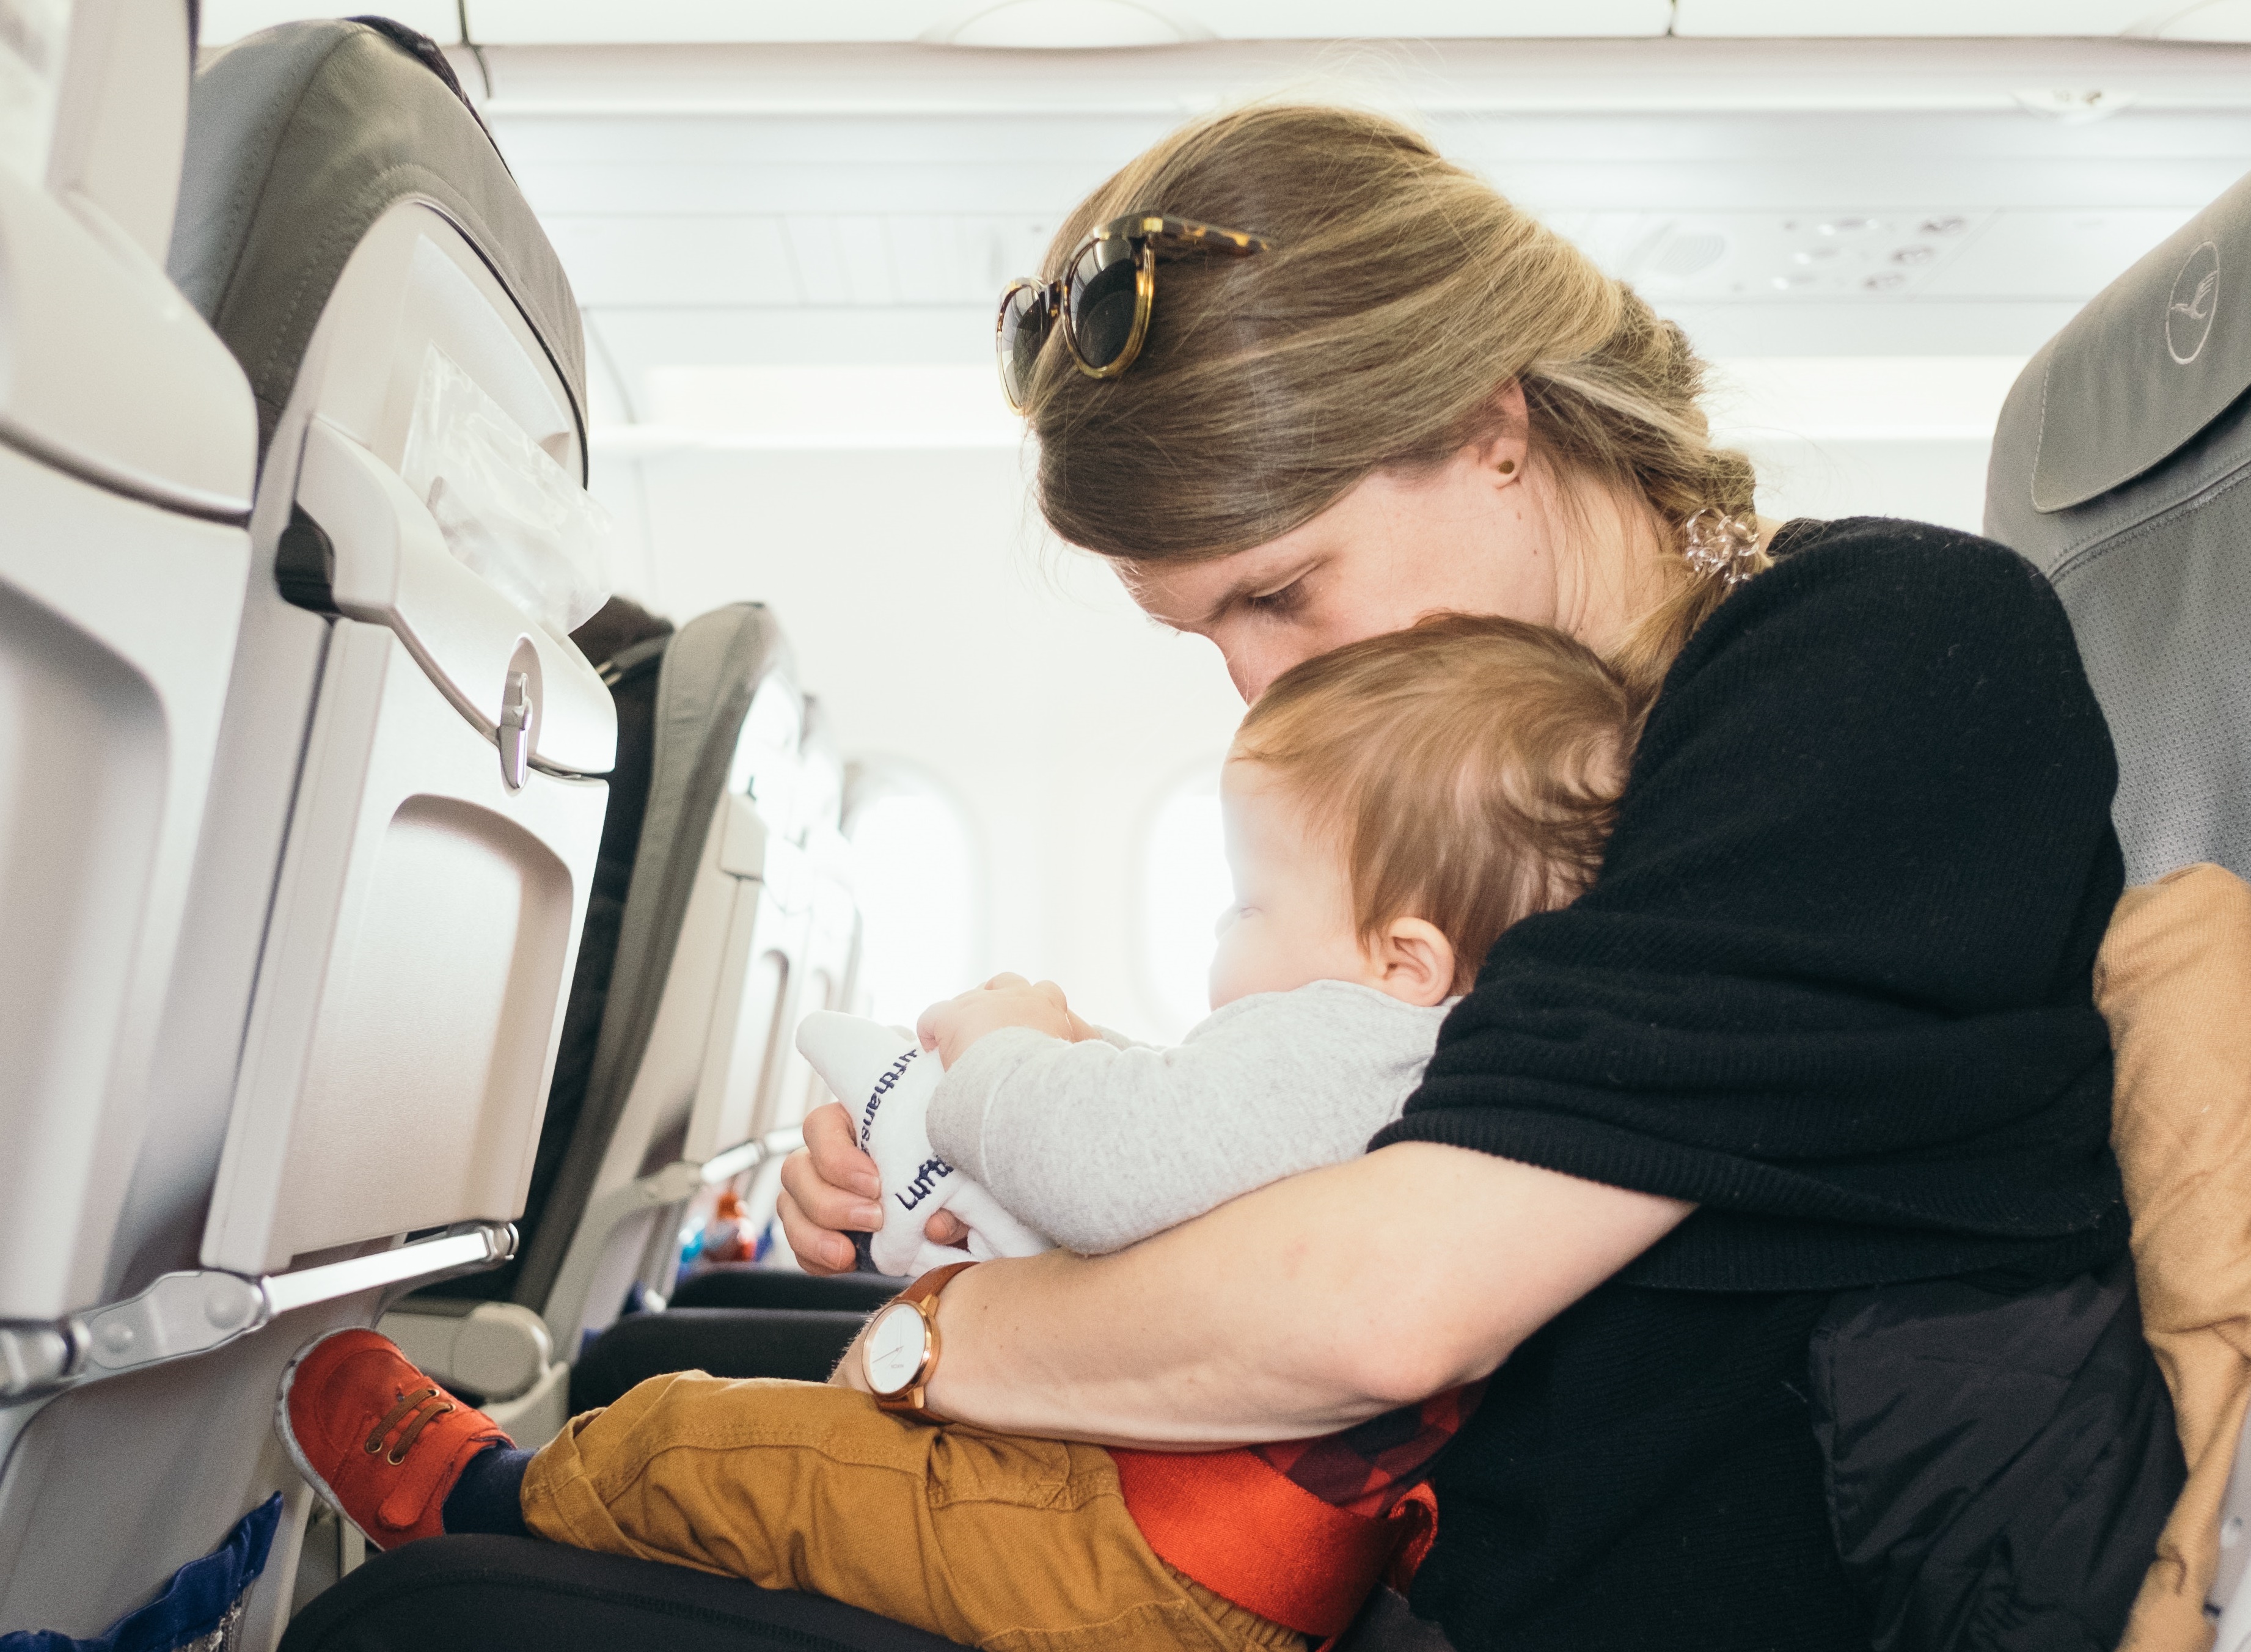 Можно ли игрушки в самолет. Пассажиры с детьми в самолете. Самолет для детей. Путешествие на самолете для детей. Места для детей в самолете.